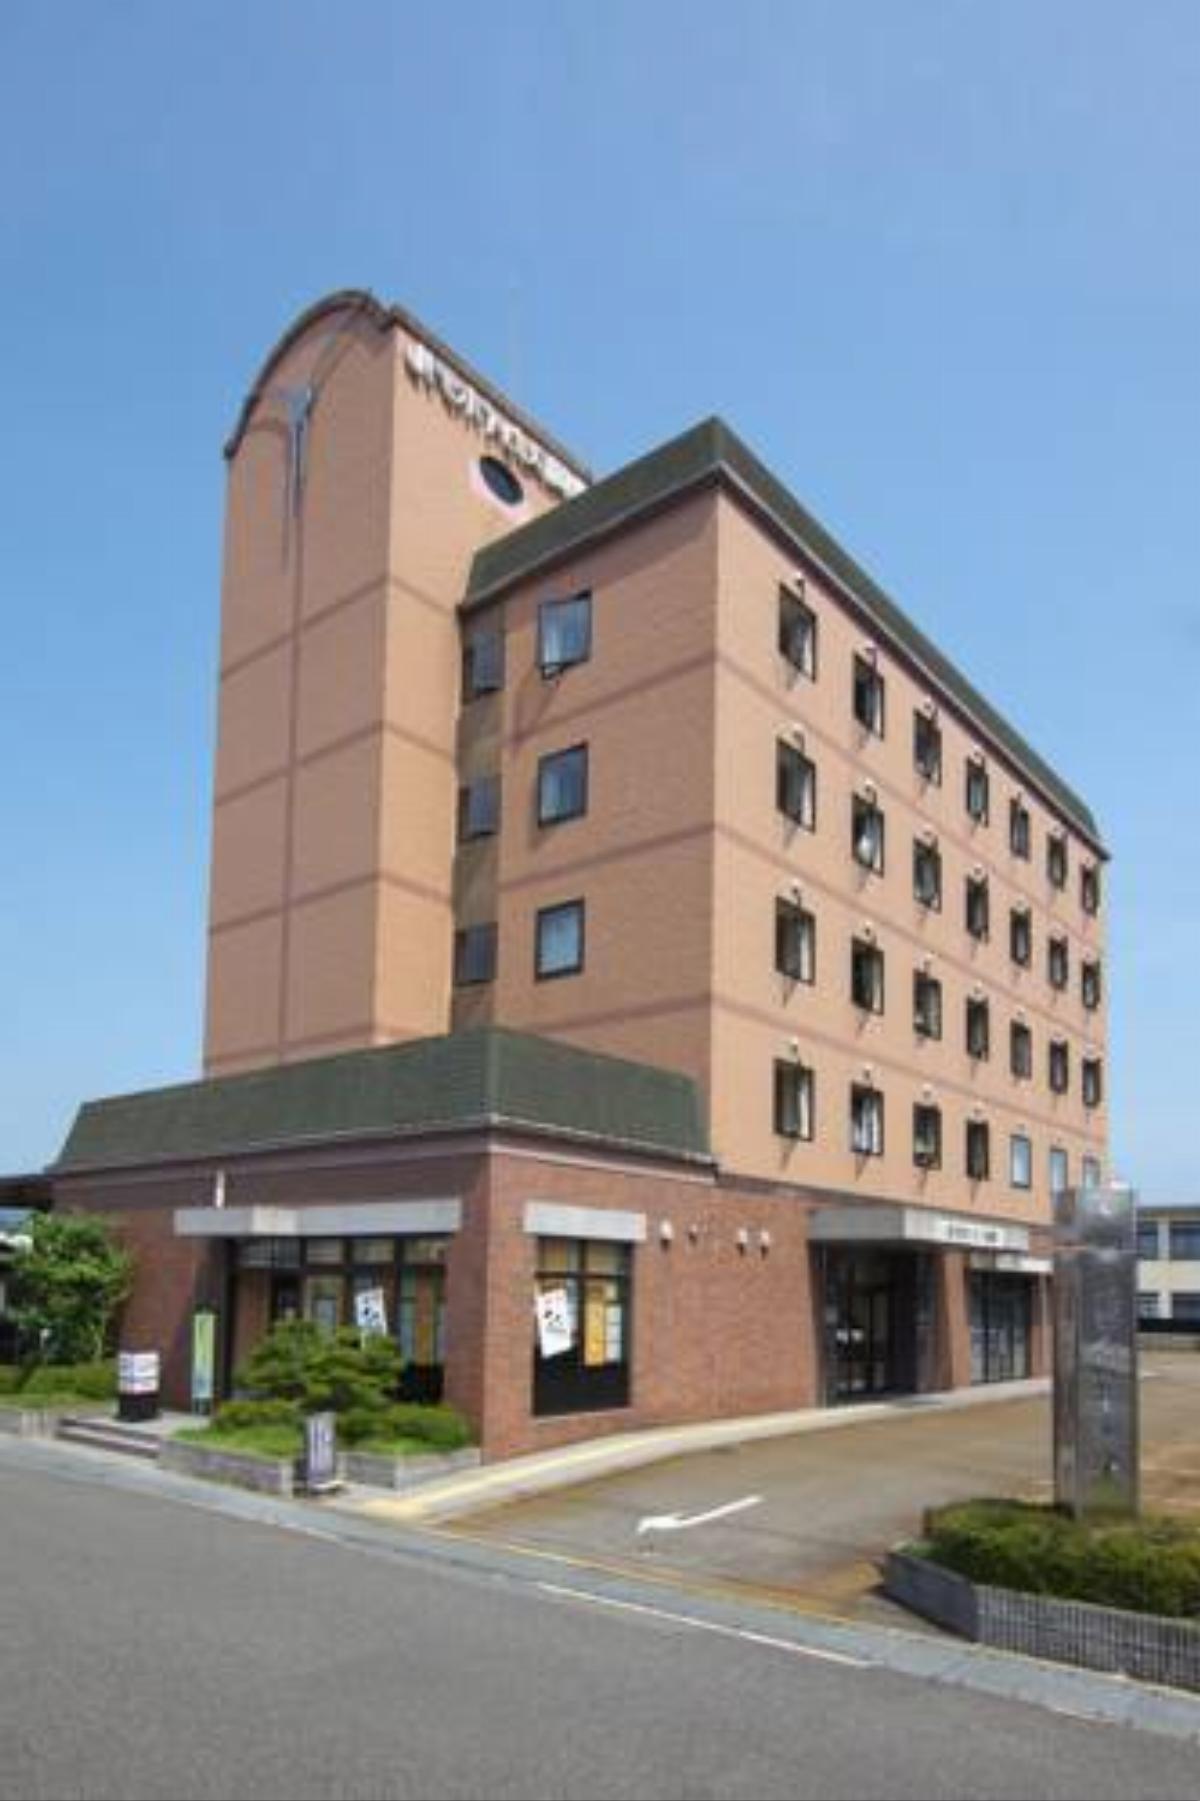 Toyooka Sky Hotel Hotel Toyooka Japan